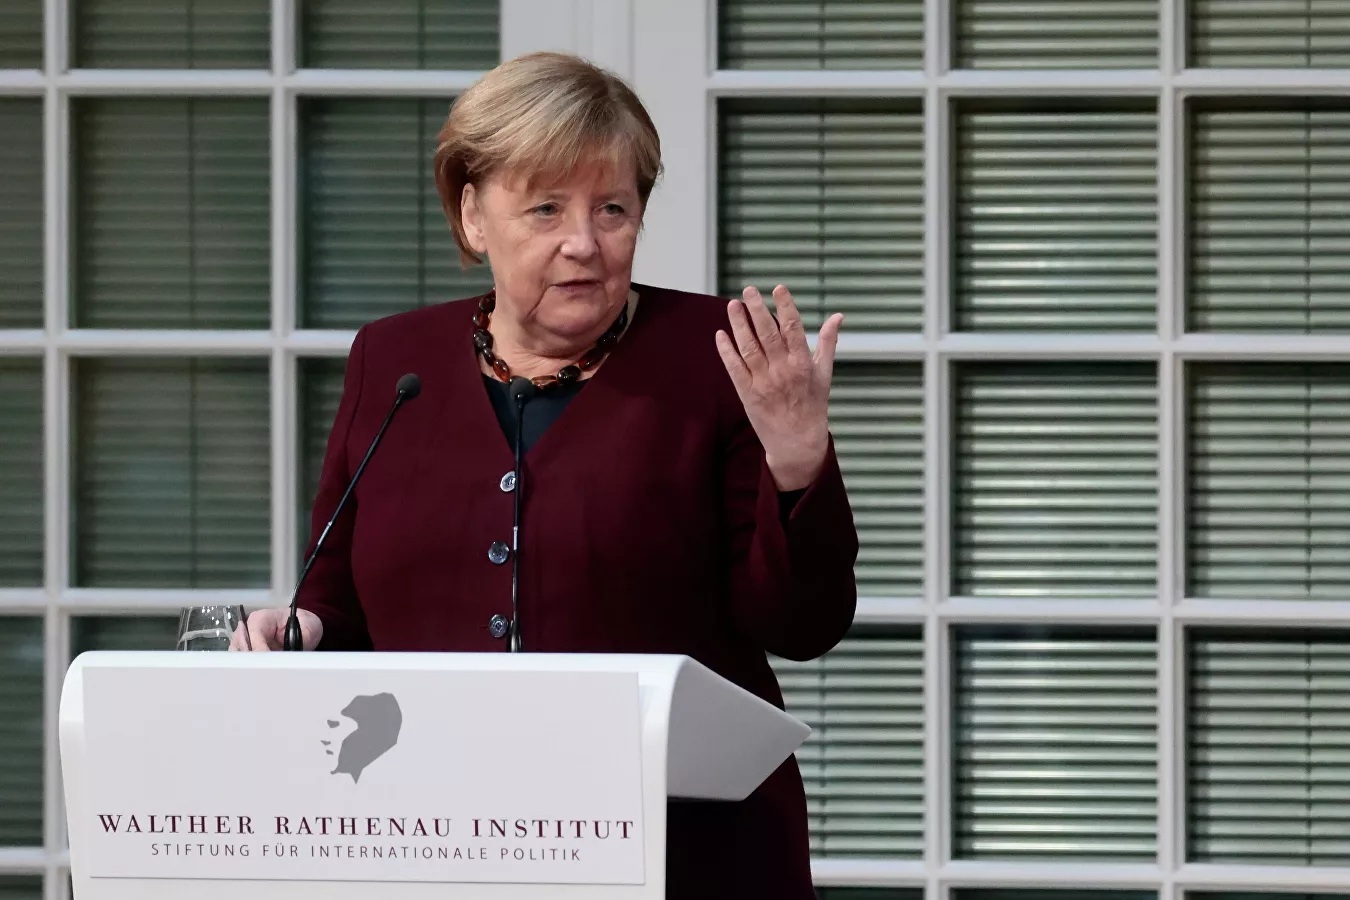 Bà Merkel chọn bản nhạc rock cho buổi lễ chia tay sau 16 năm nắm quyền